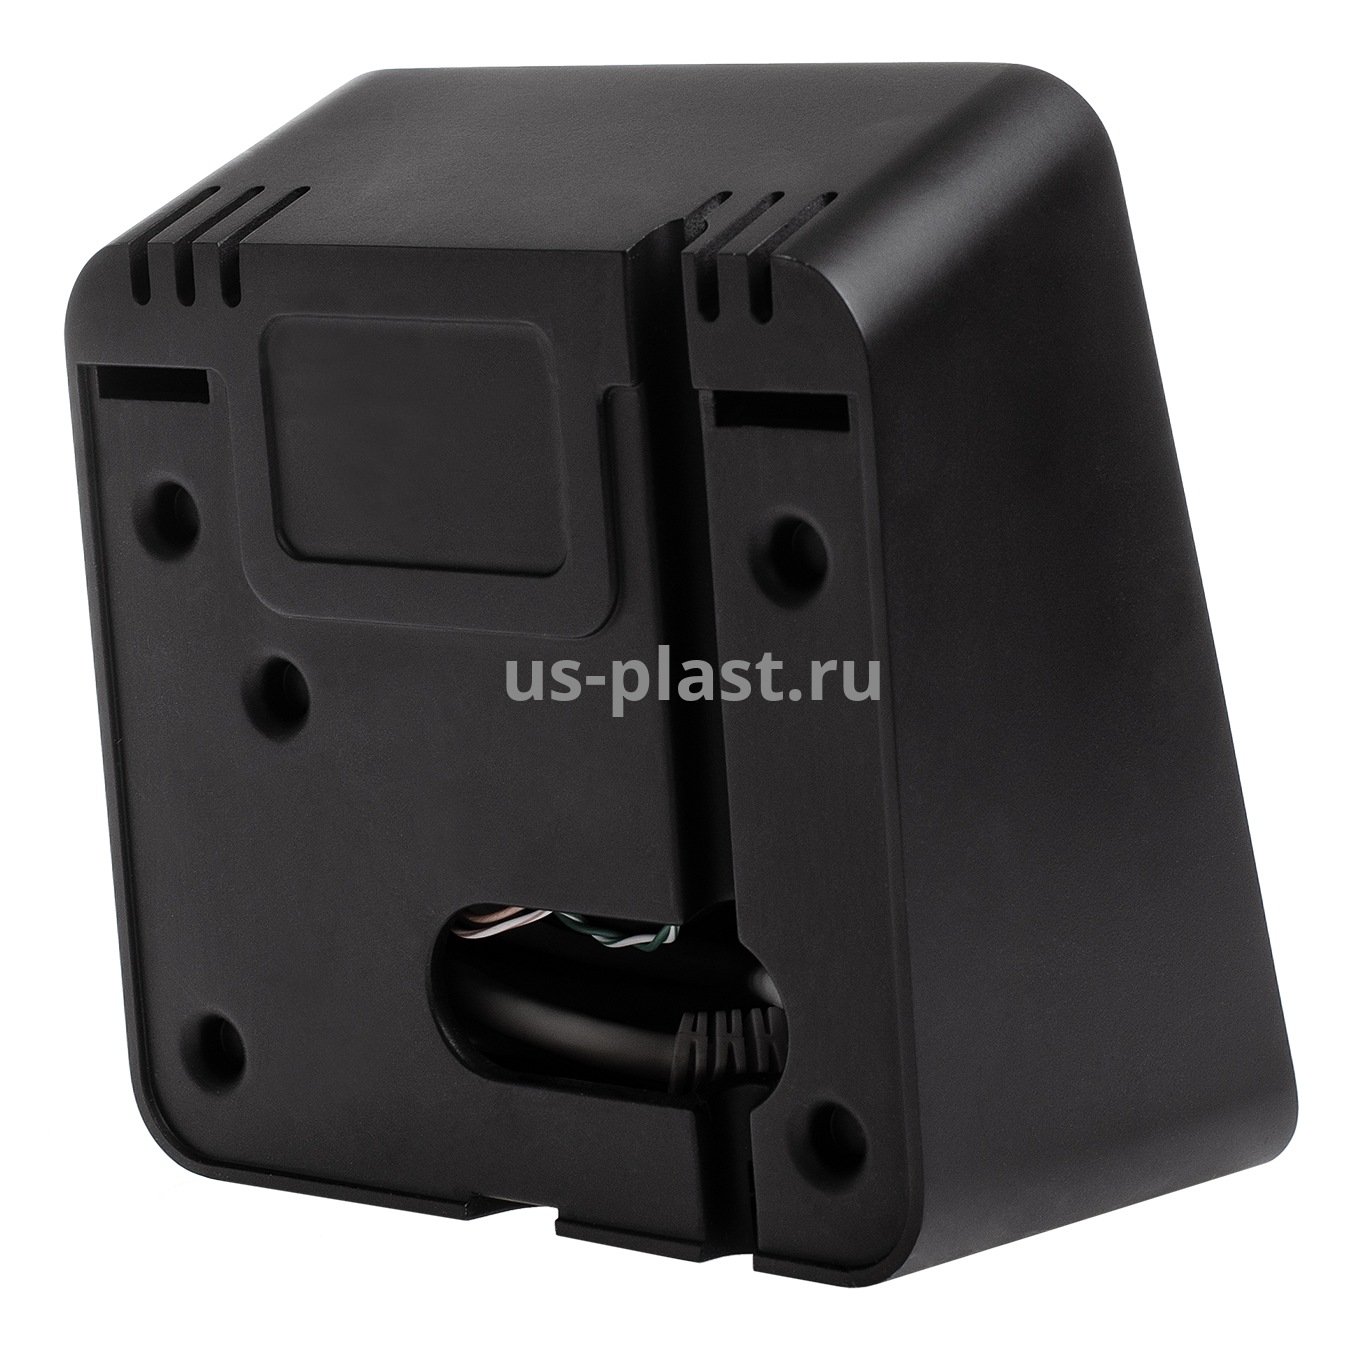 BioSmart PALMJET BOX-Т, биометрический считыватель вен ладони и RFID-карт с дистанционной термометрией. Фото N4